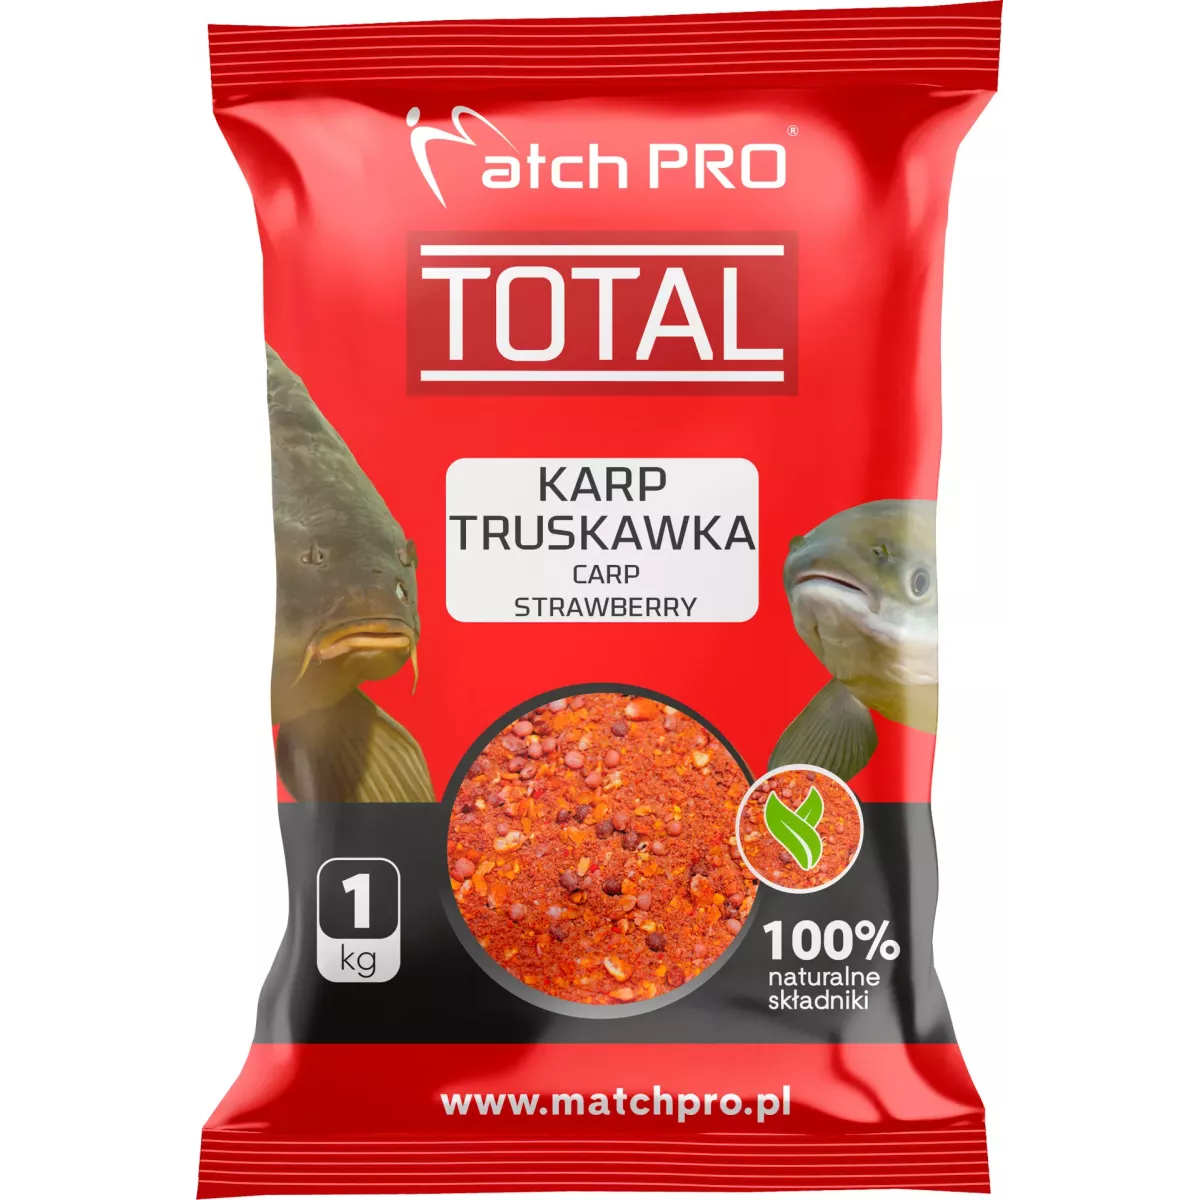 Zanęta MatchPro Total 1kg - KARP TRUSKAWKA